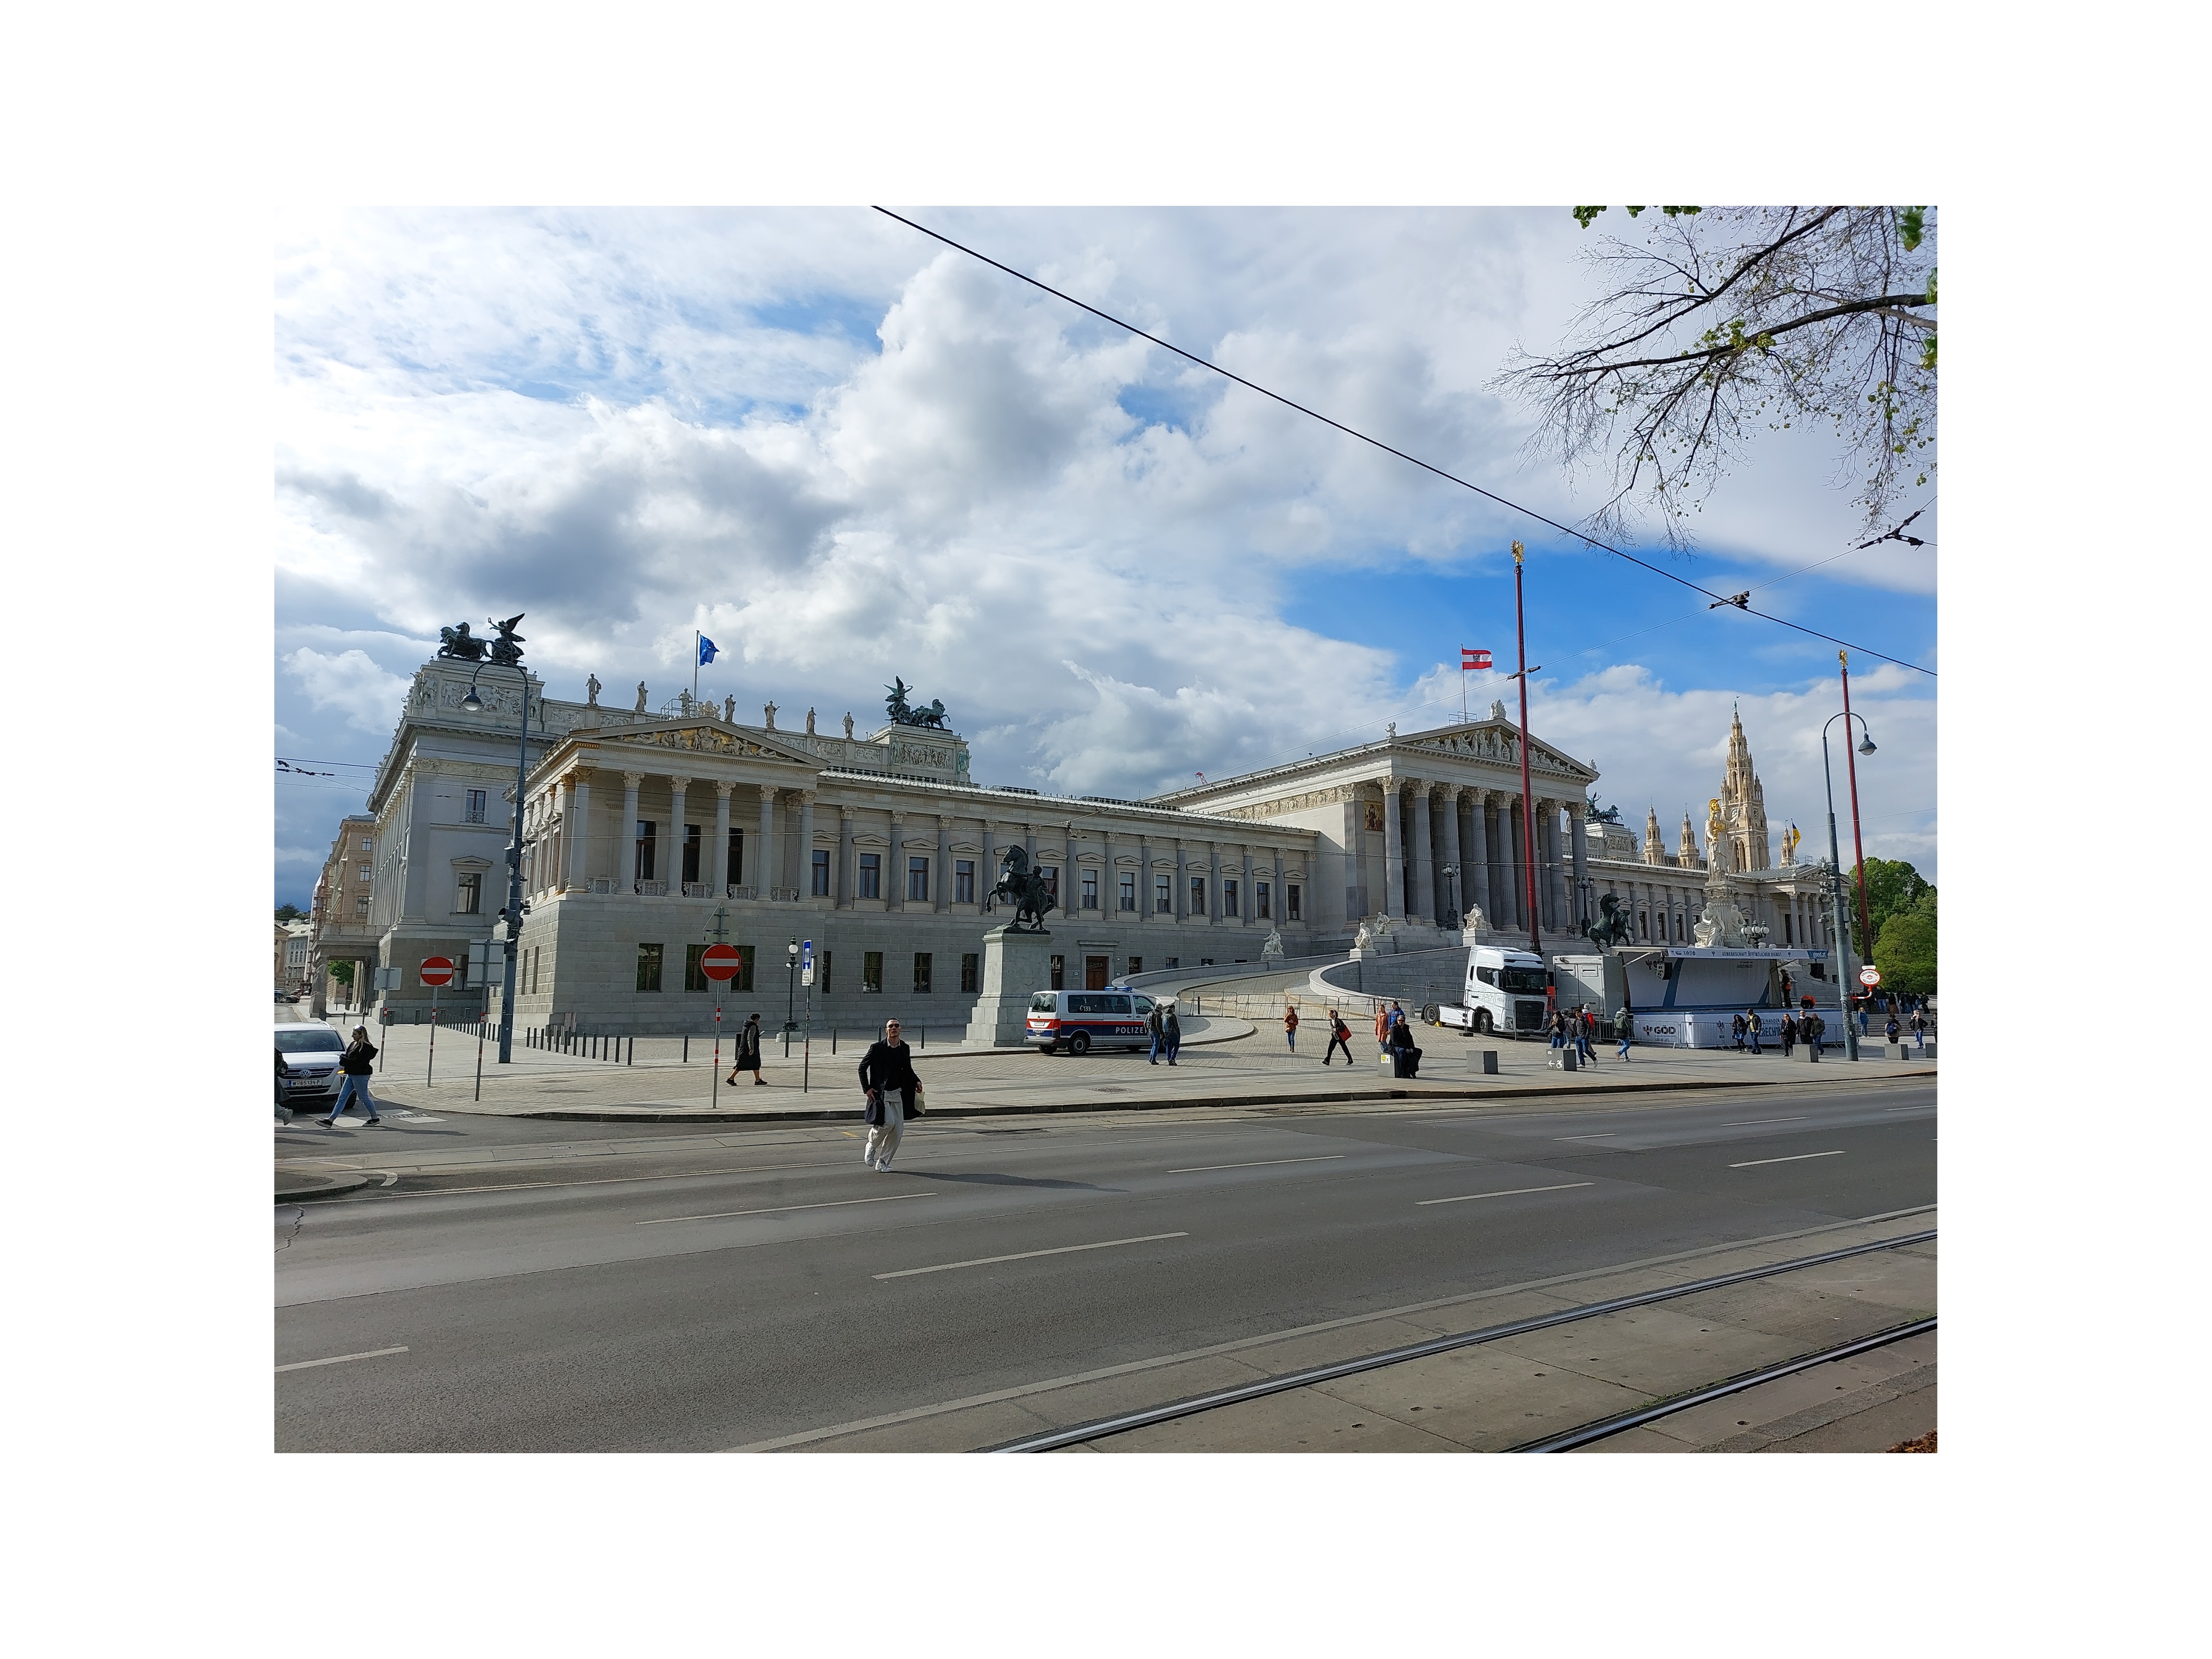 Parliament, Vienna rephoto